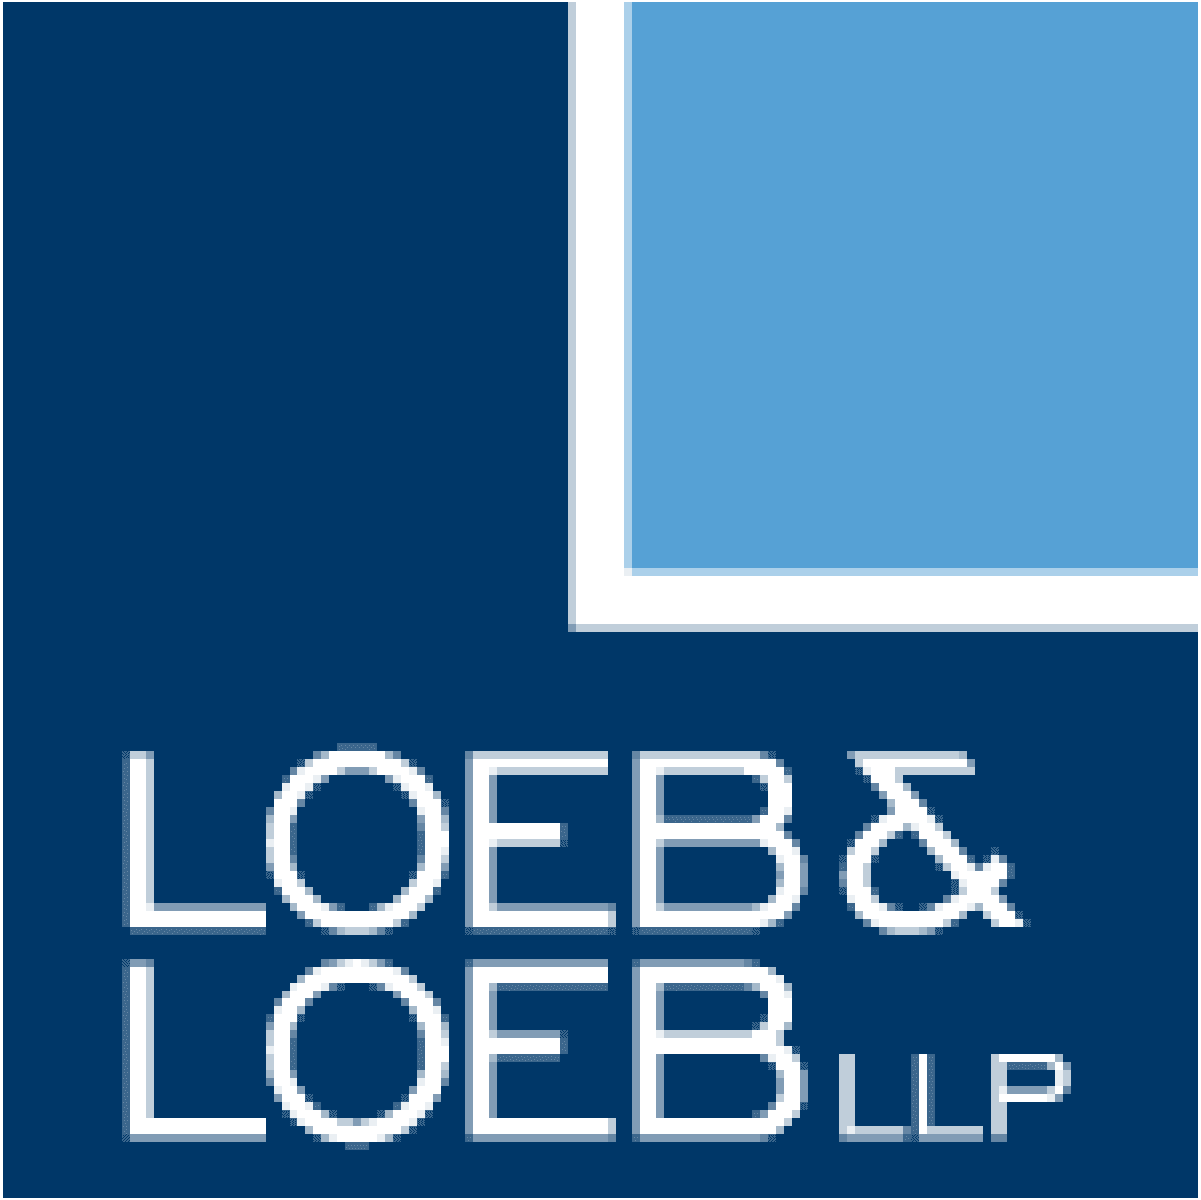 Loeb & Loeb logo